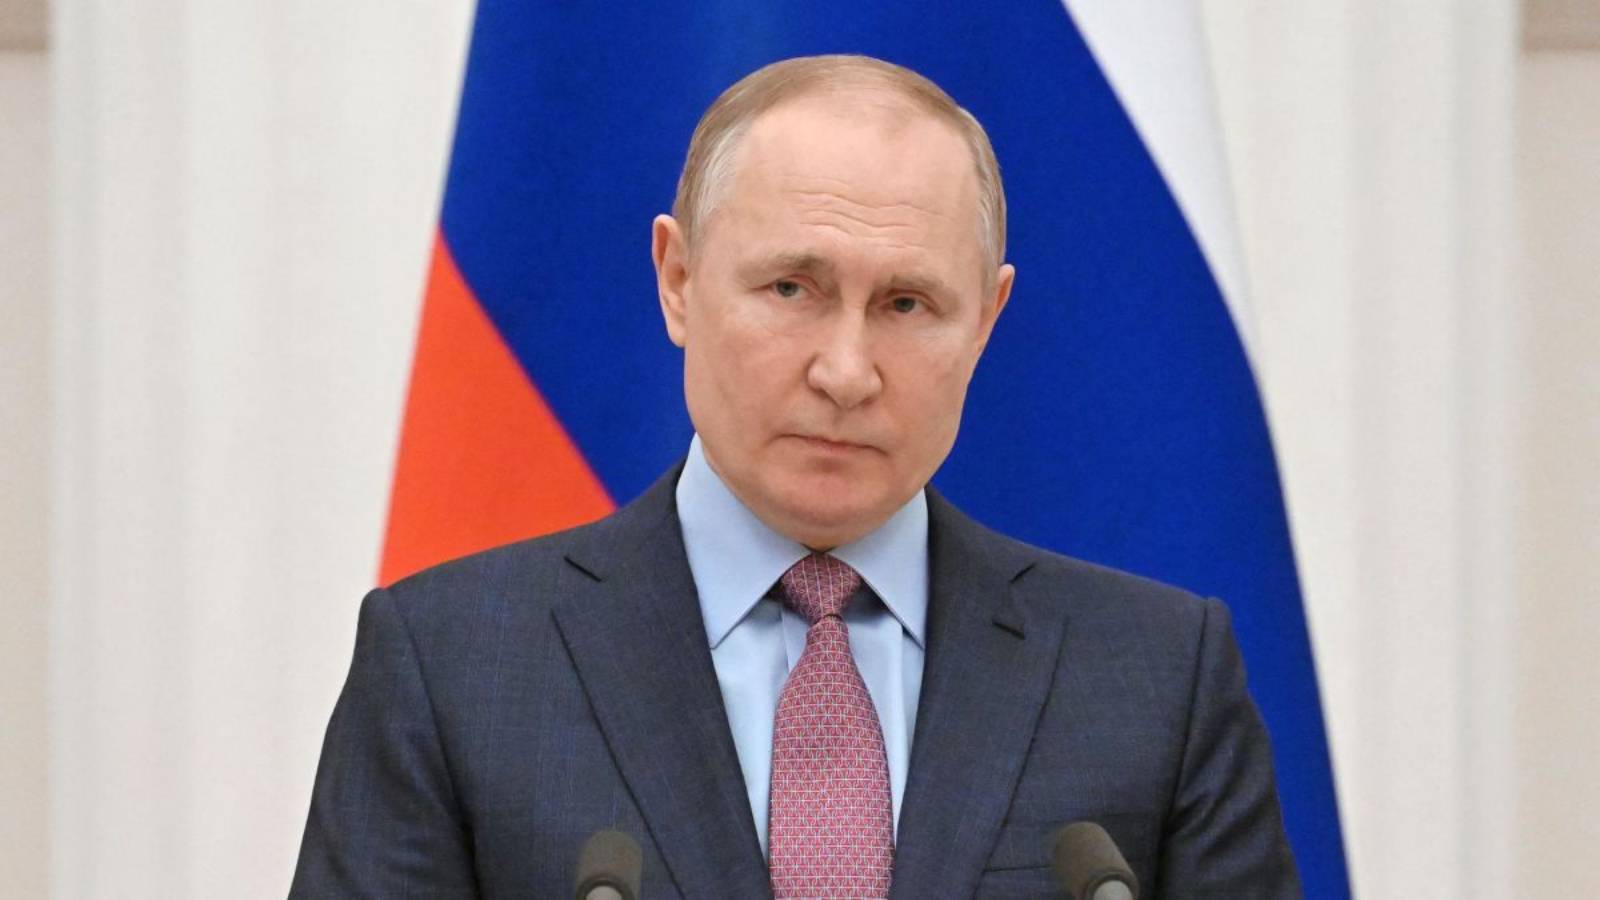 Władimir Putin nie zamierza wchodzić w konflikt z NATO